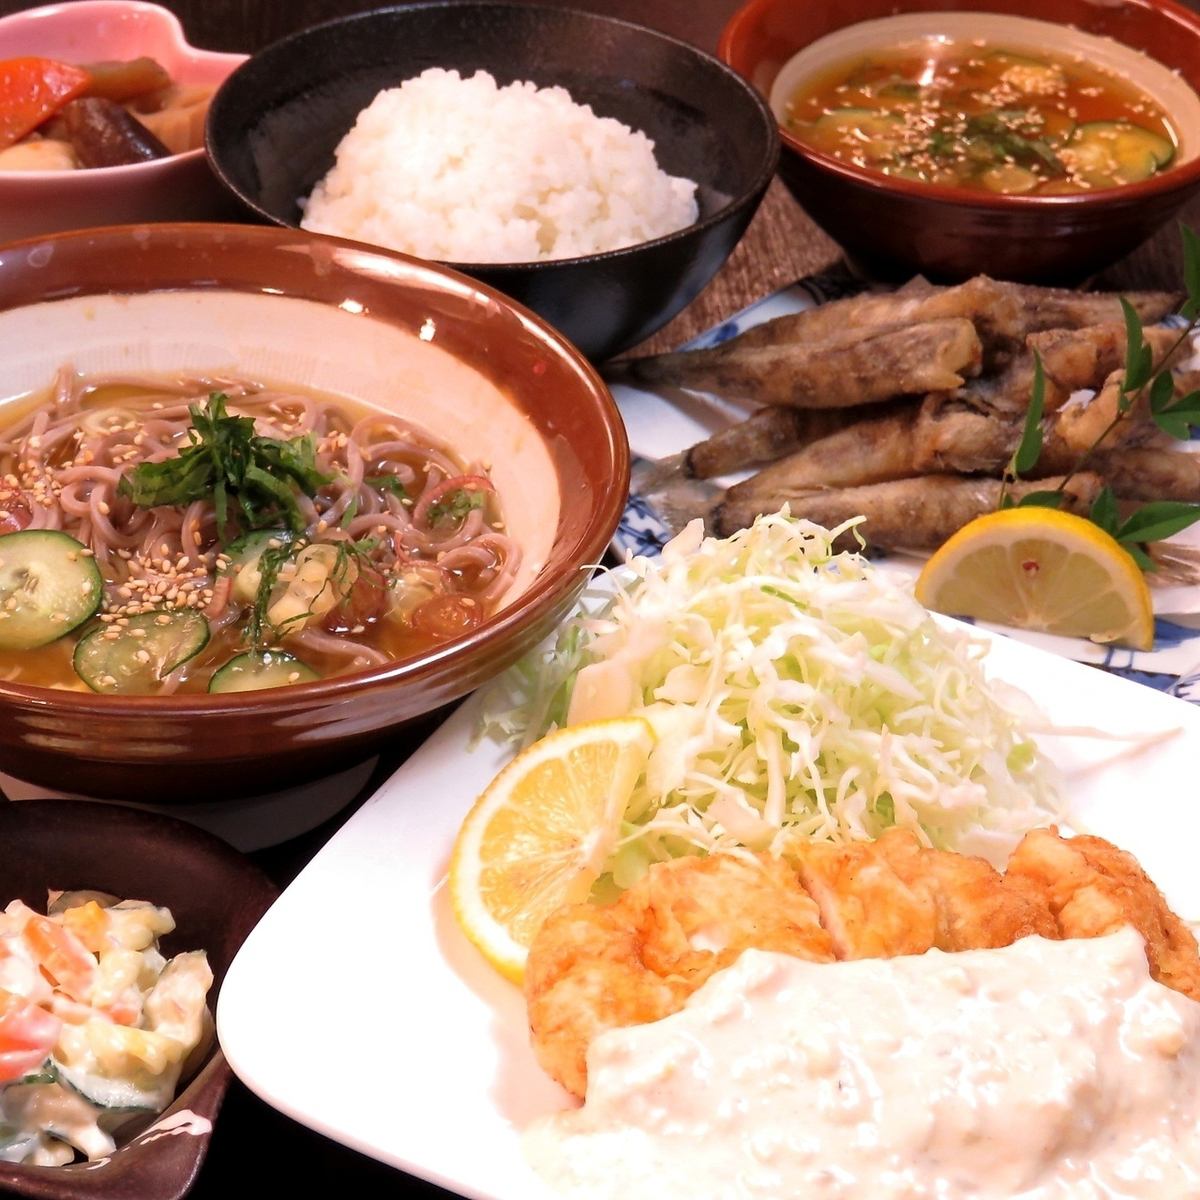 您可以享受节日菜单和宫崎当地美食◎这是一个有趣且受欢迎的居酒屋♪